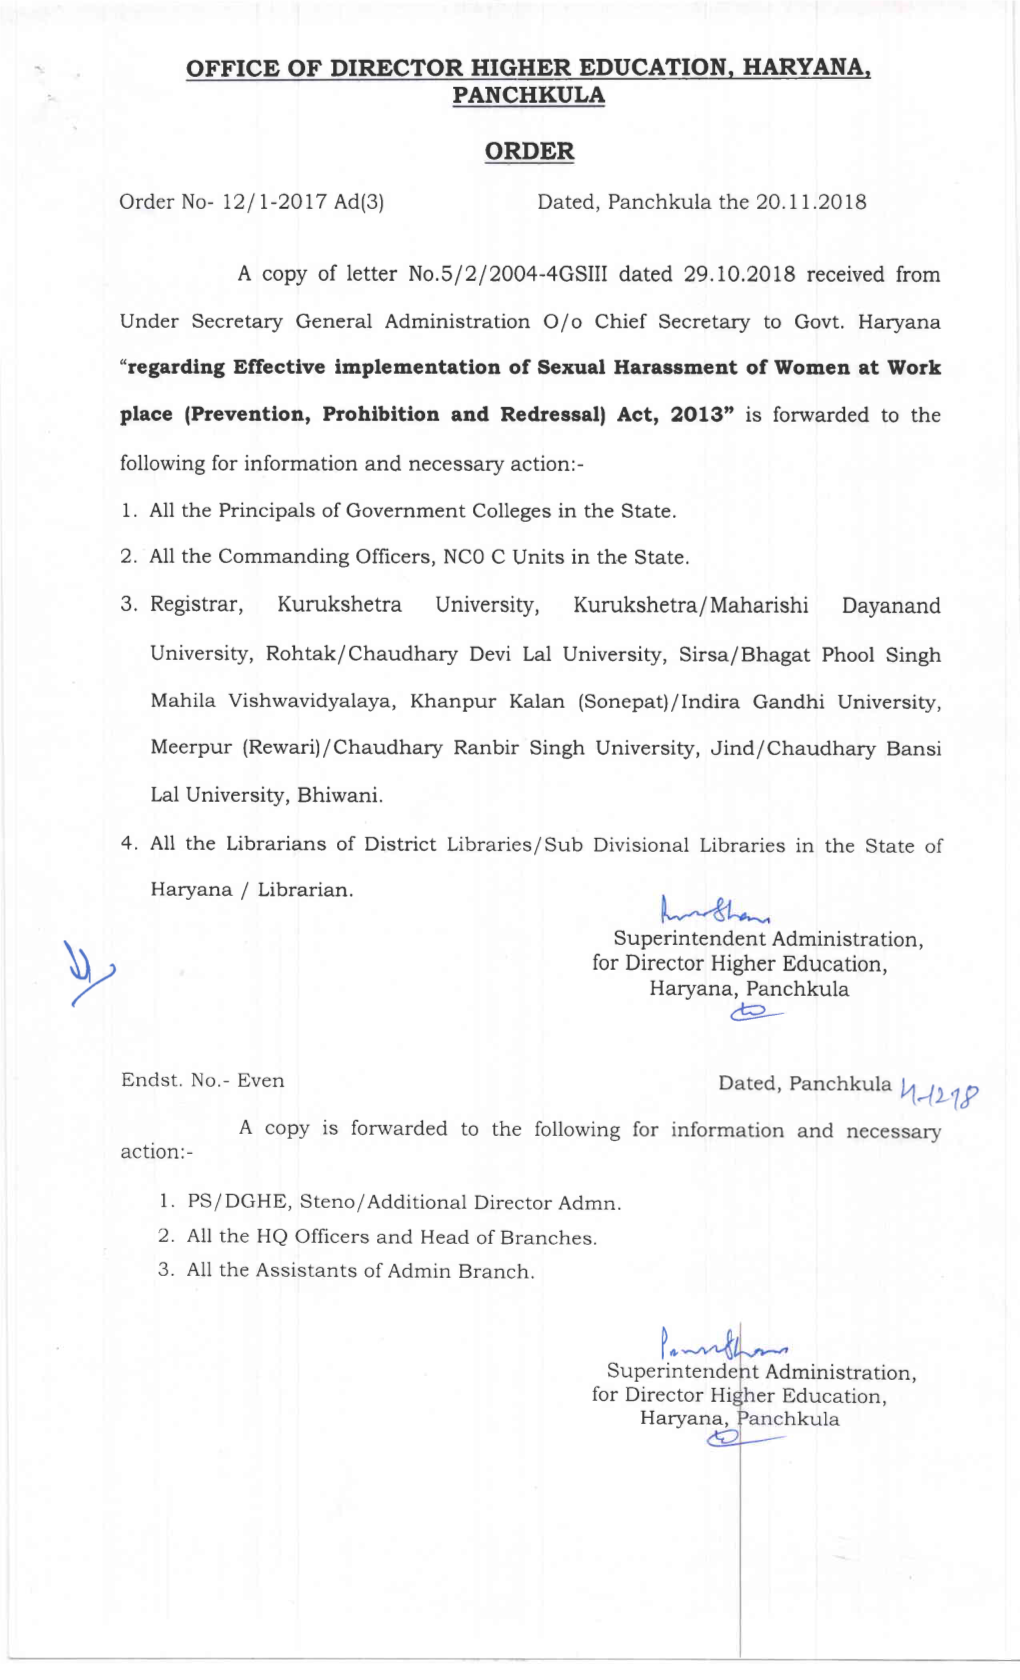 3. Registrar, Kurukshetra University, Kurukshetra/Maharishi Dayanand